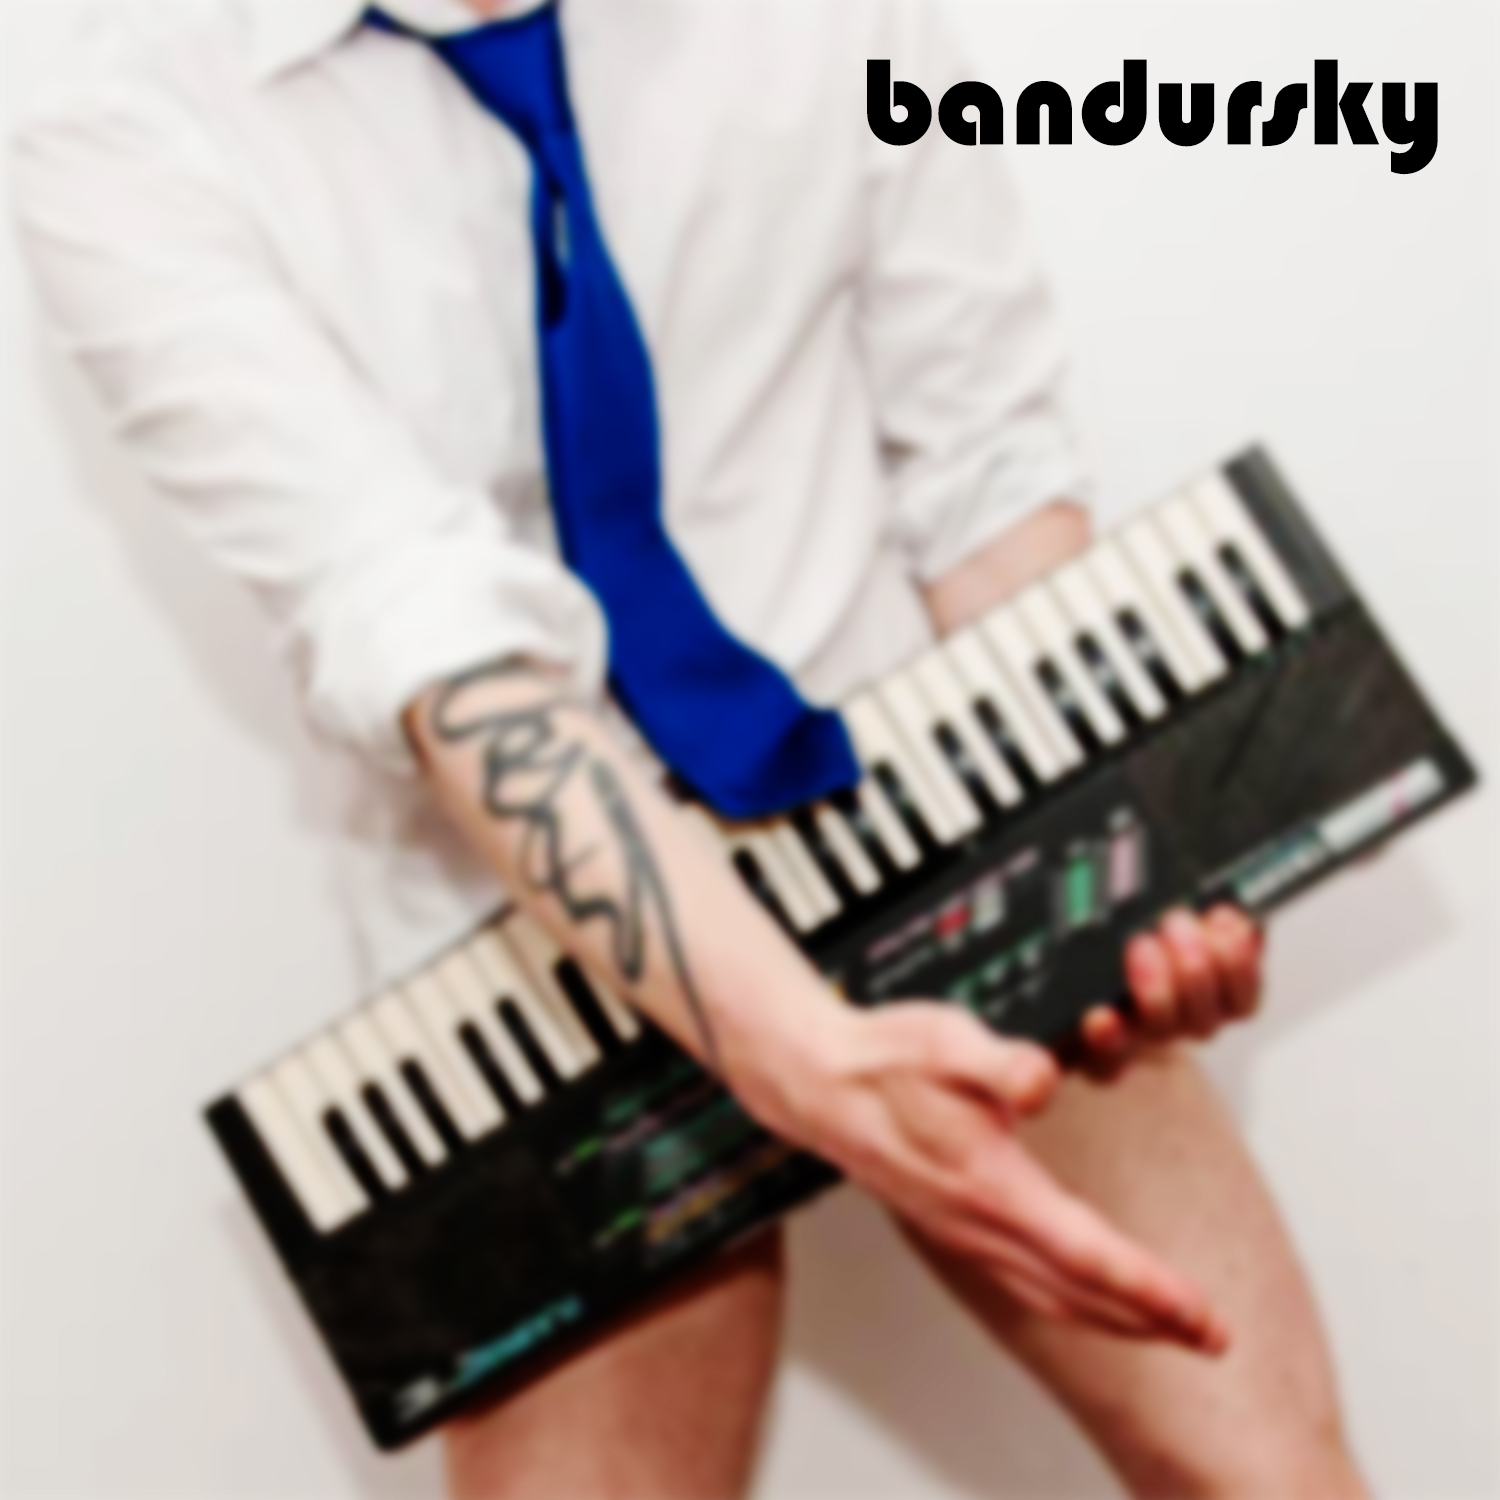 Bandursky album cover